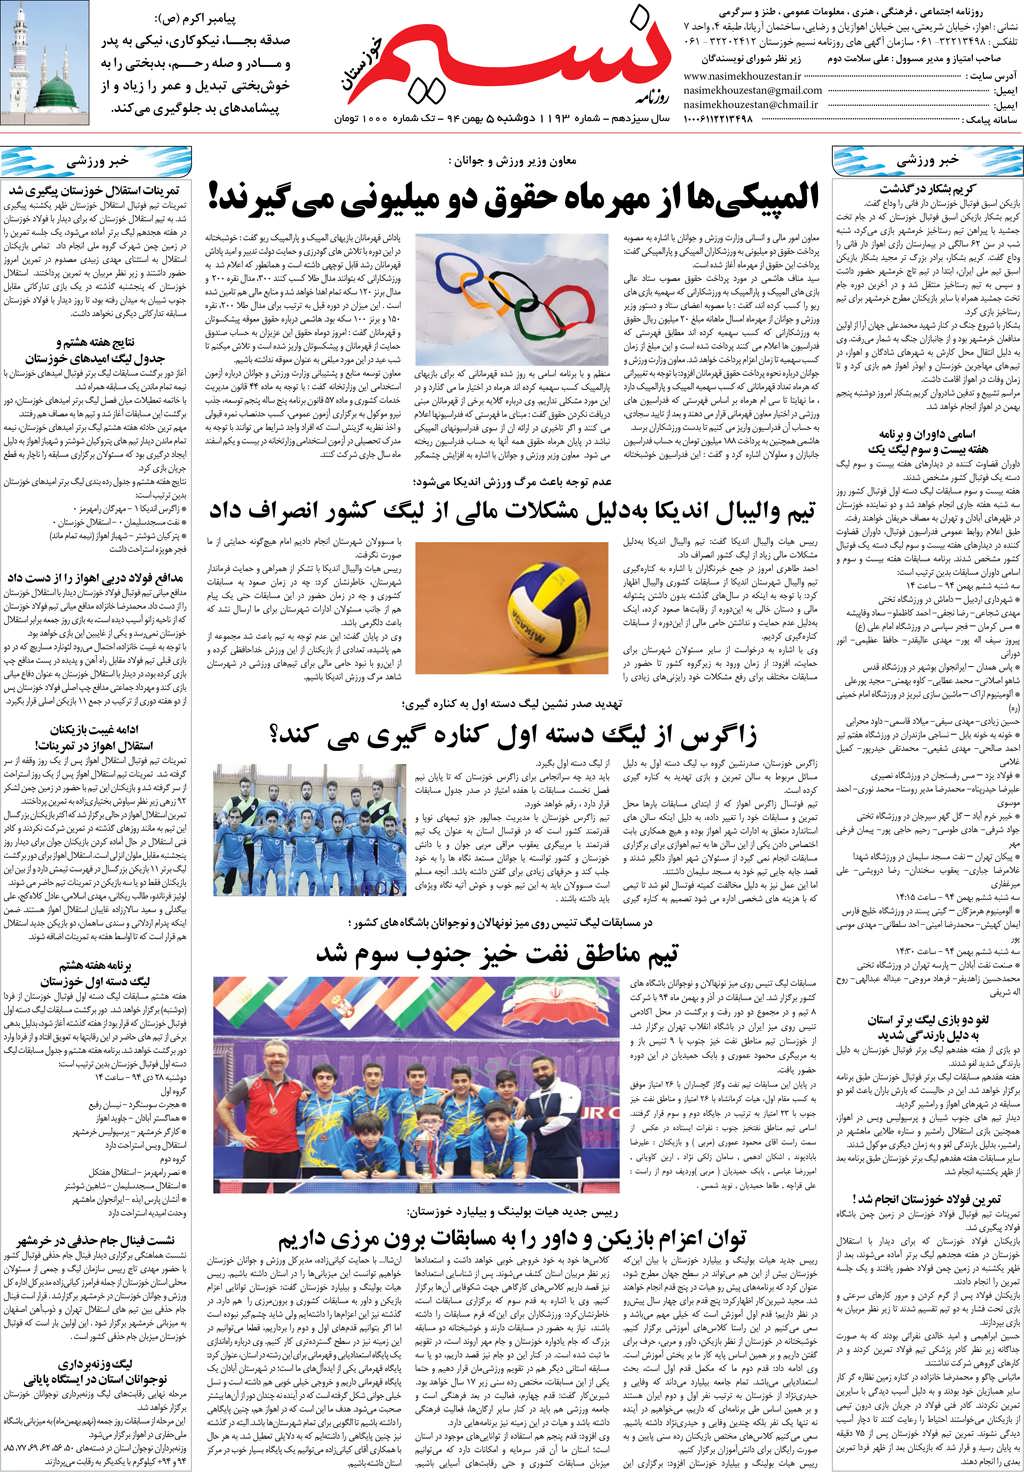 صفحه آخر روزنامه نسیم شماره 1193